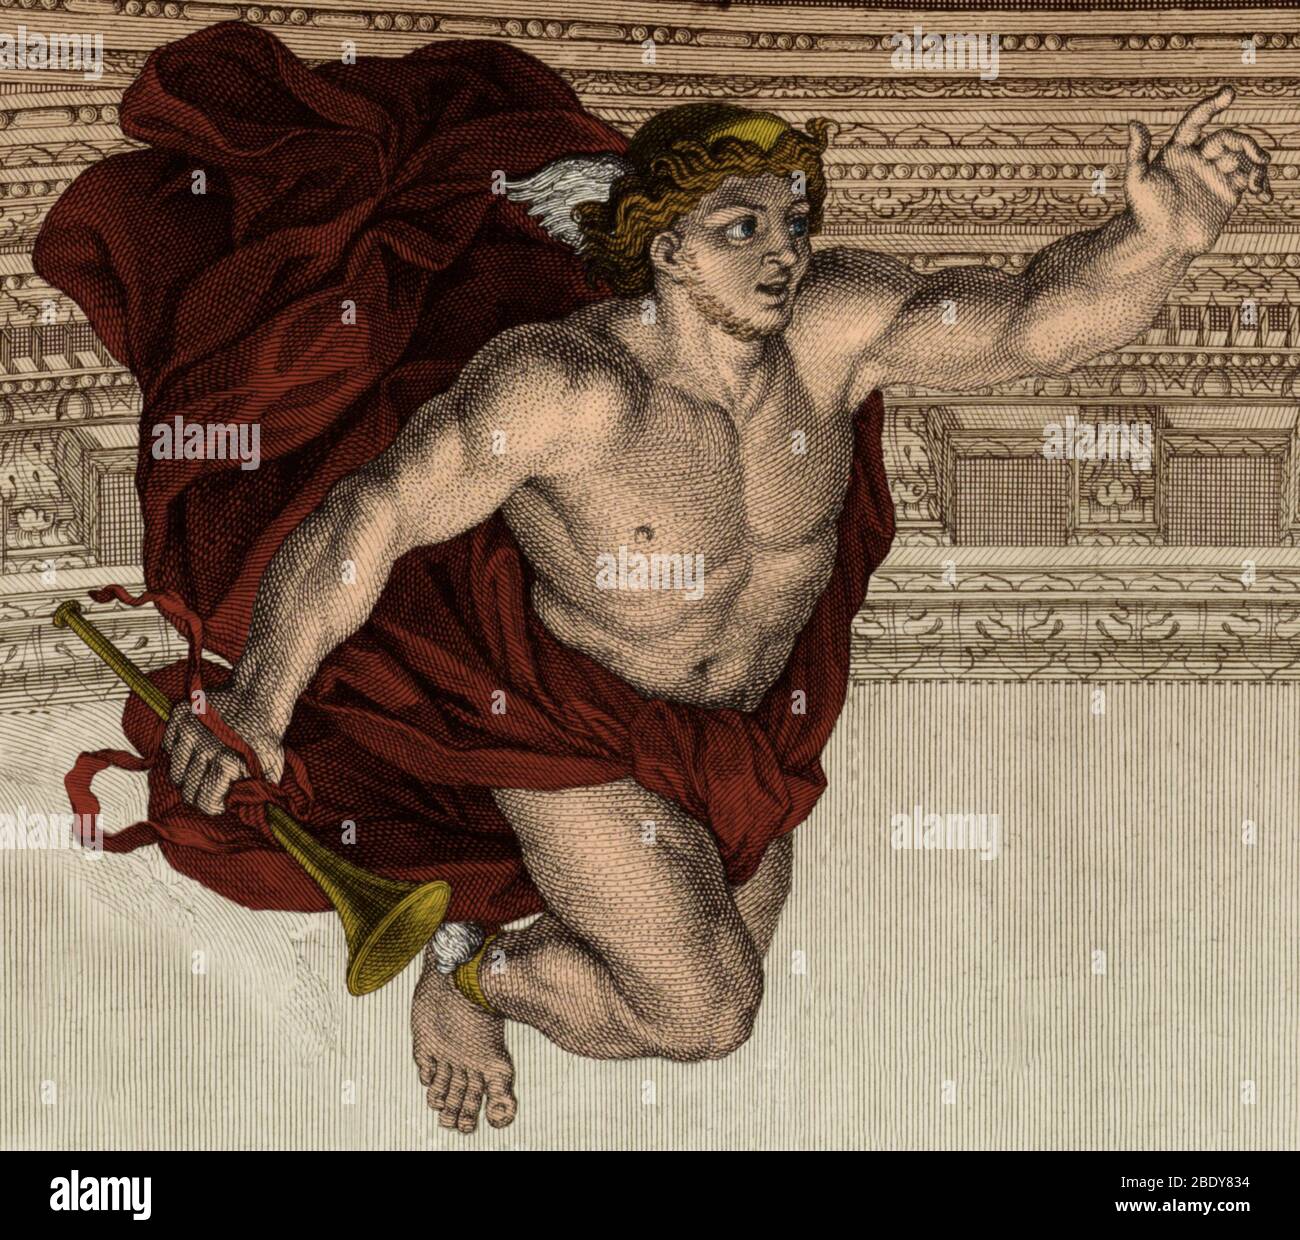 Hermes, Dieu grec ancien Banque D'Images